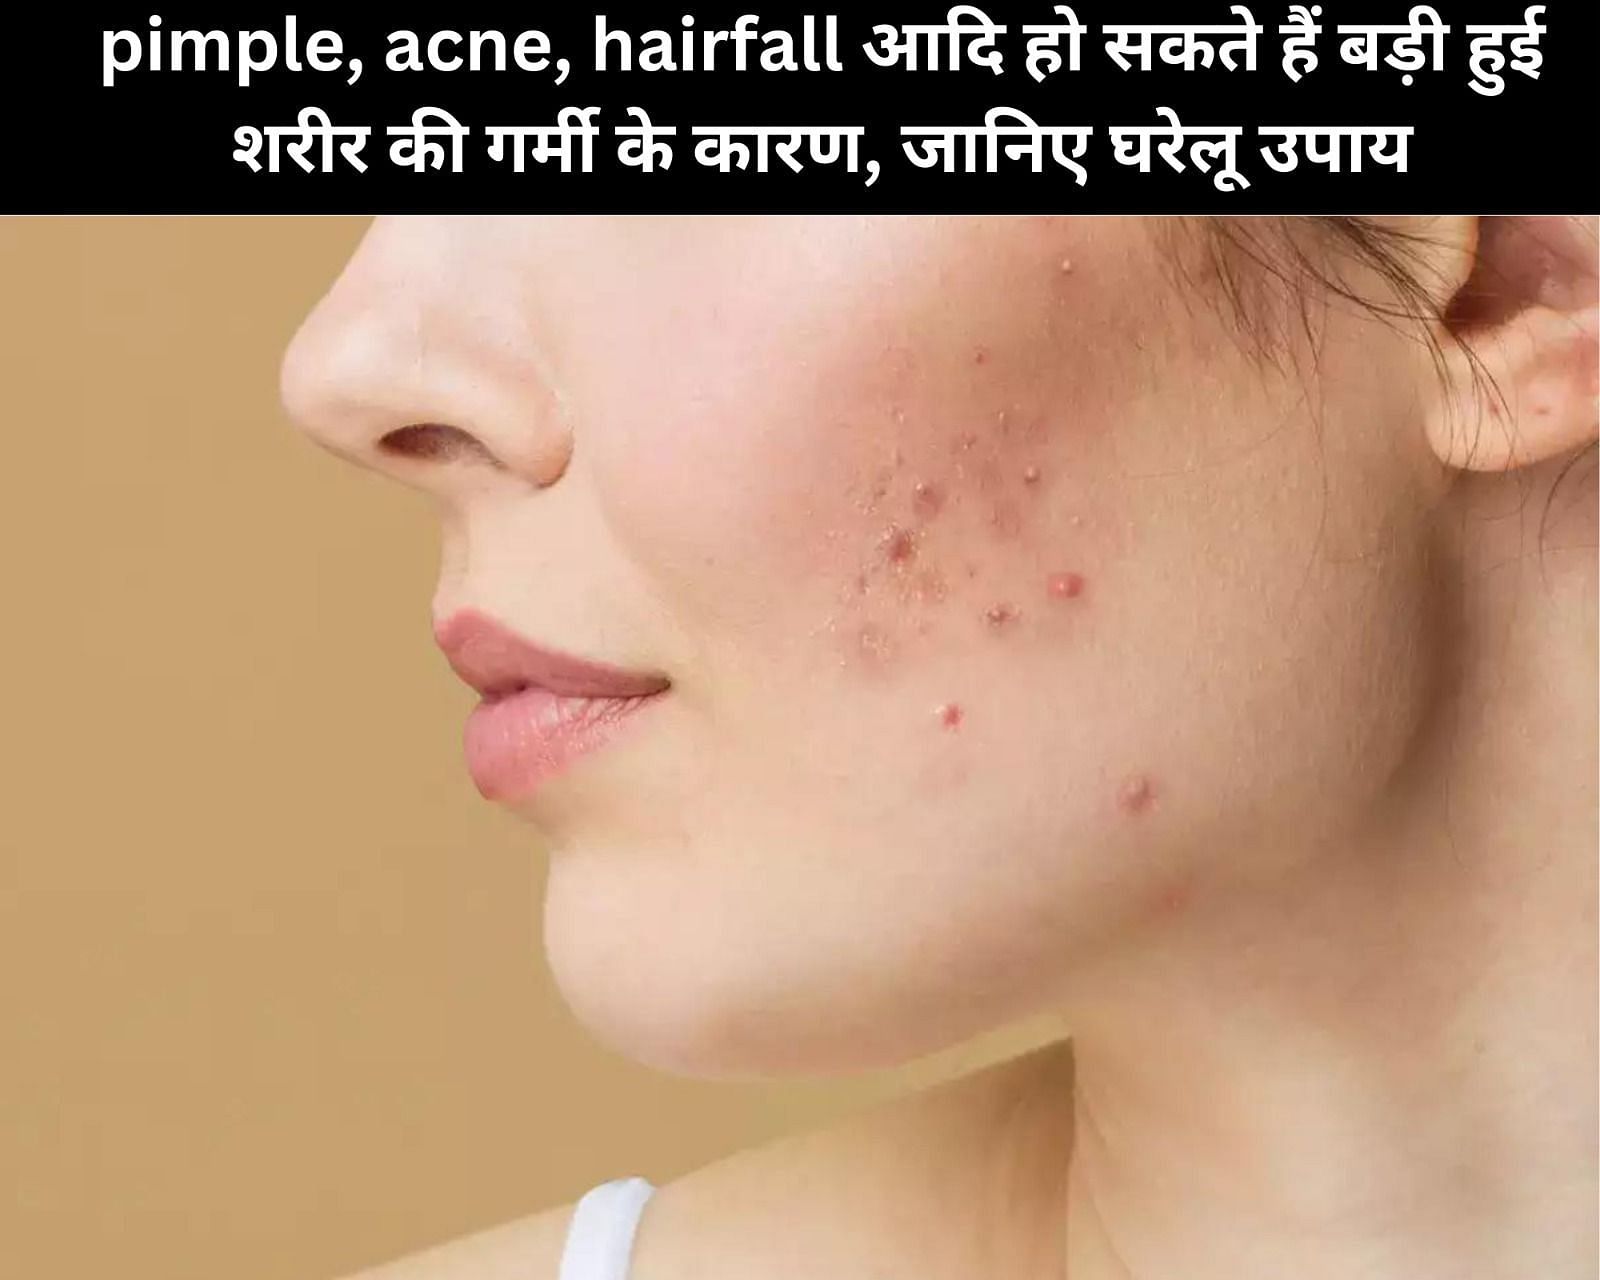 pimple, acne, hairfall आदि हो सकते हैं बड़ी हुई शरीर की गर्मी के कारण, जानिए 15 घरेलू उपाय (फोटो - sportskeedaहिन्दी)